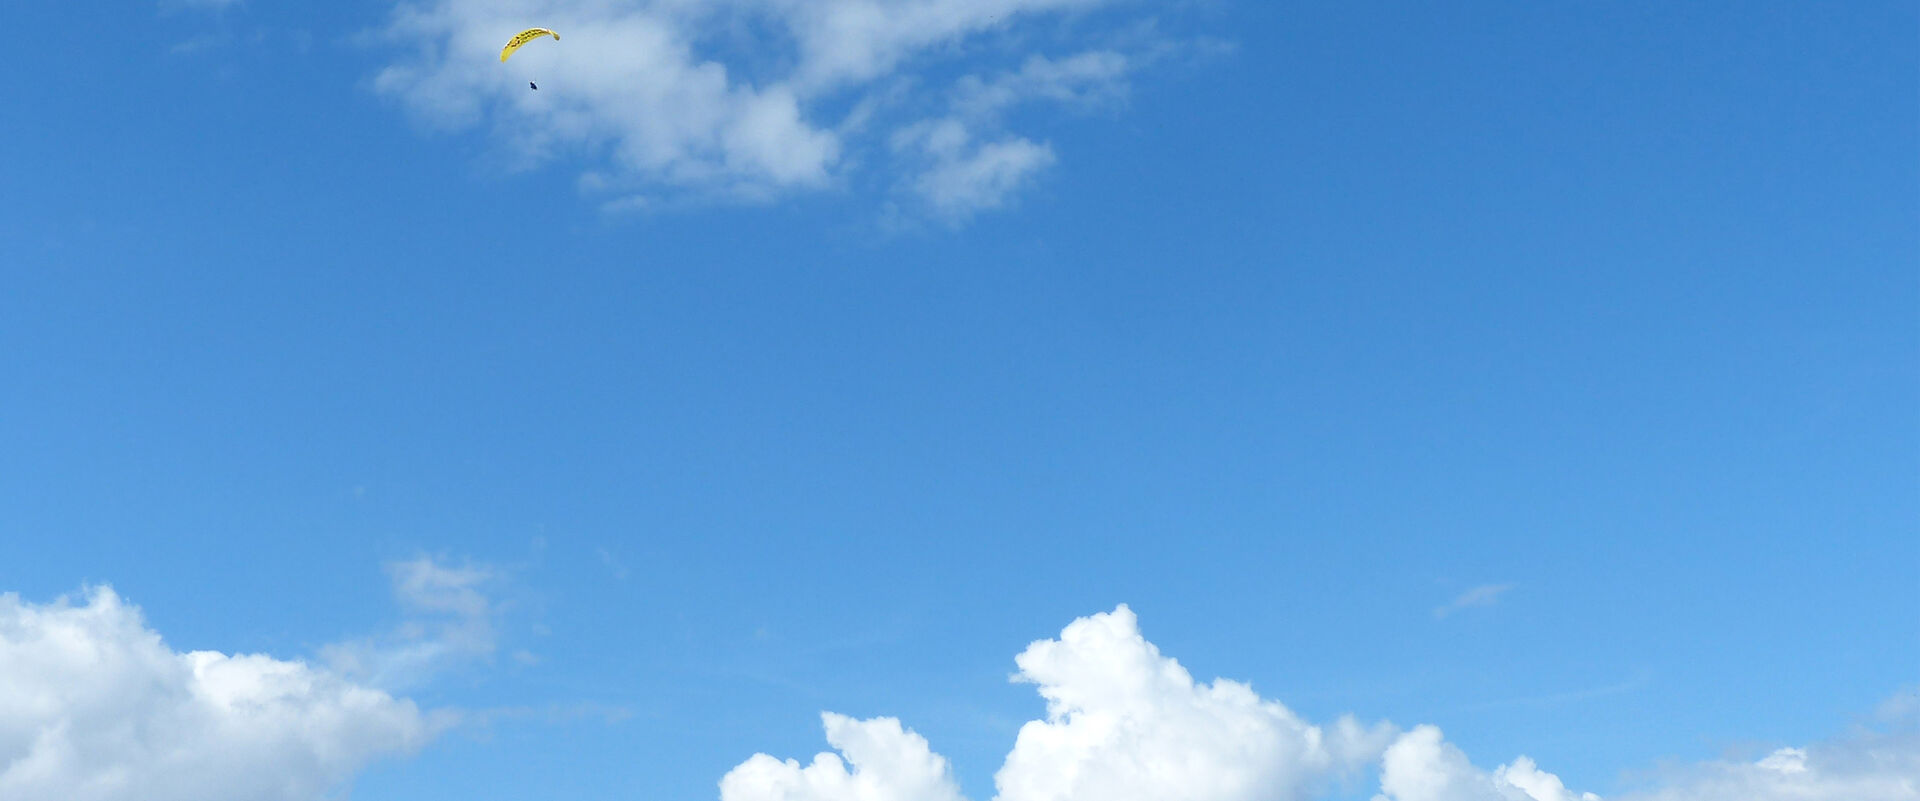 Blauer Himmel mit weißen Quellwolken und einem Paragleiter.